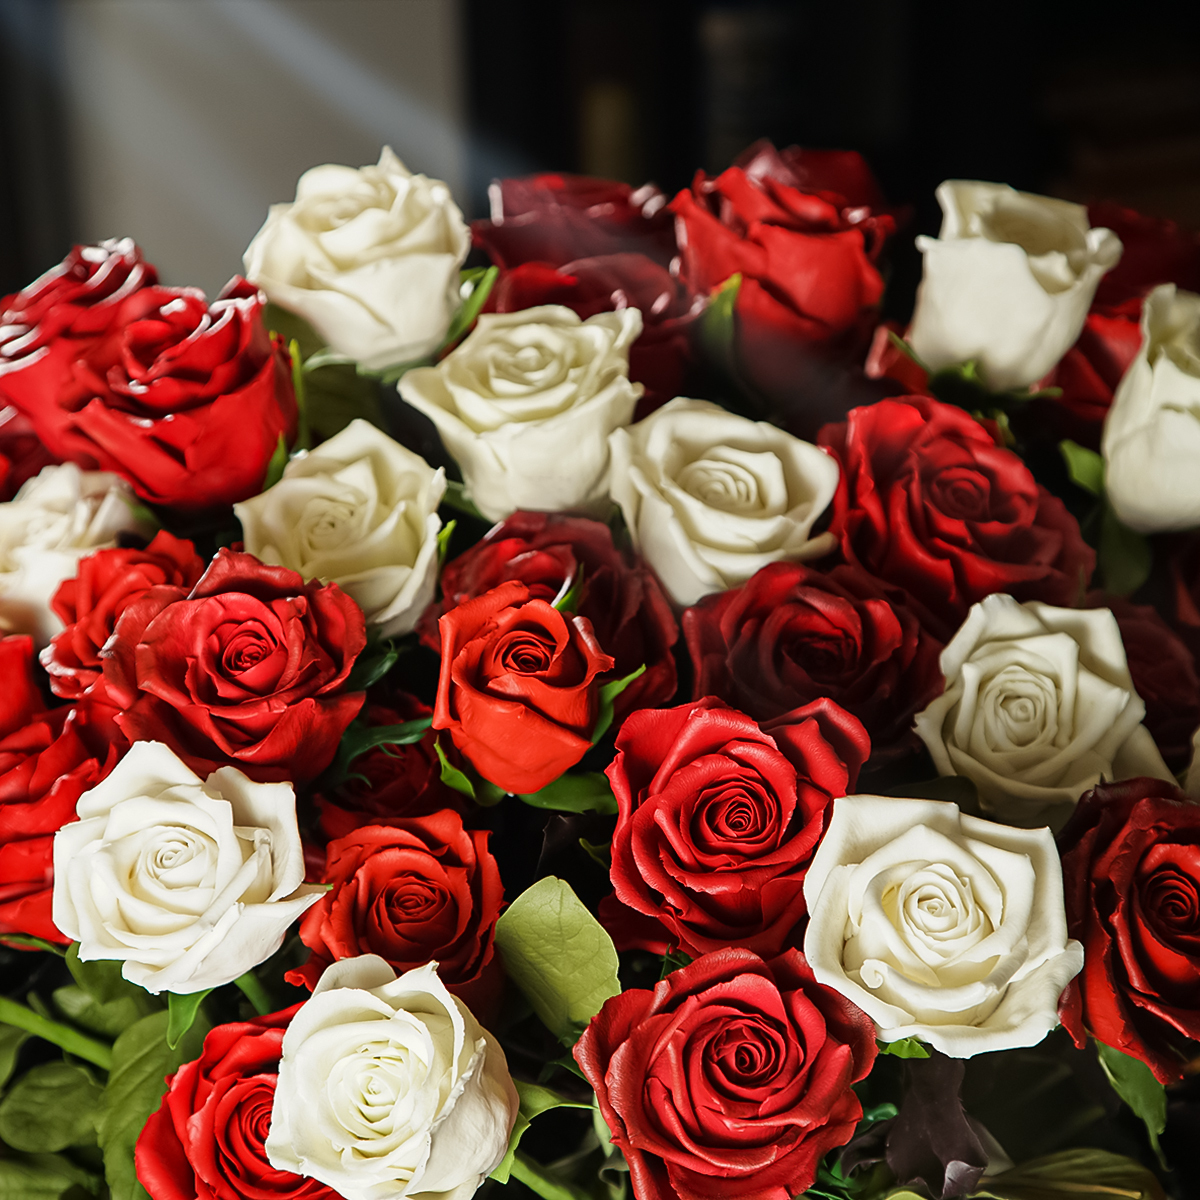 Купить букет роз из холодного фарфора ручной работы (47 шт.) от FloraModerling в Украине